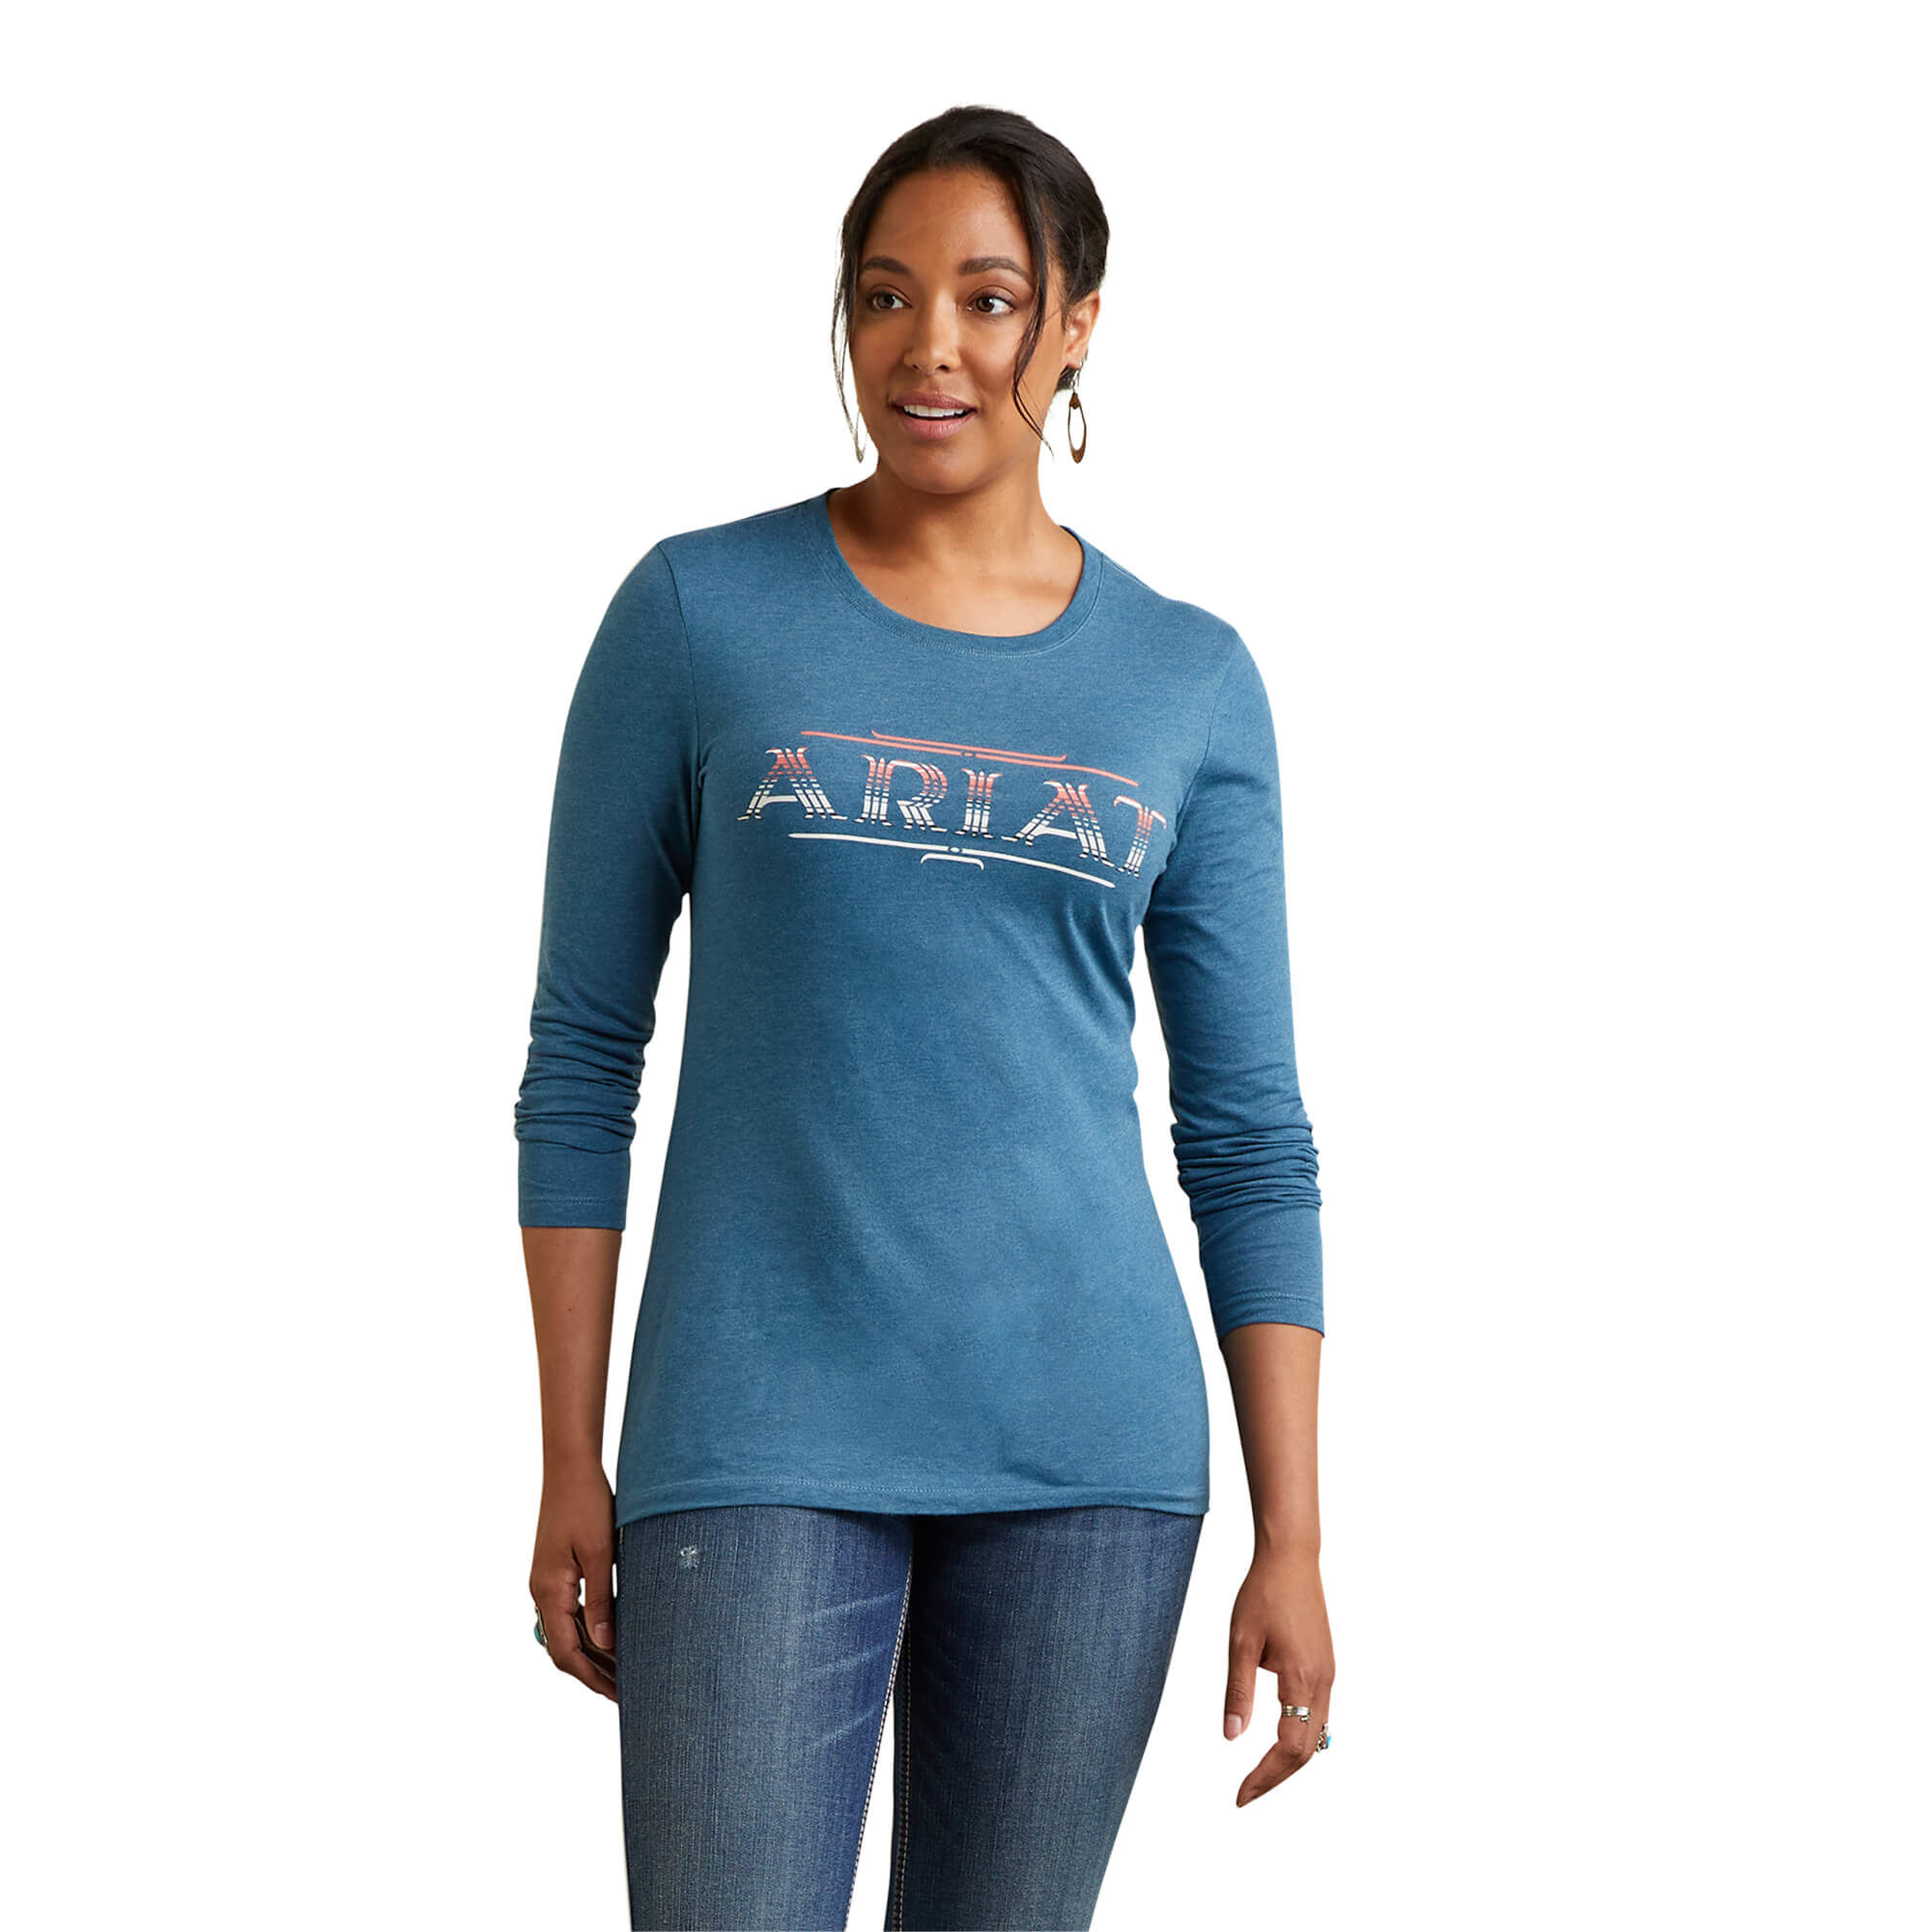 Columbia Shirt WOMEN FASHION Shirts & T-shirts Shirt Sports discount 95% Blue L 